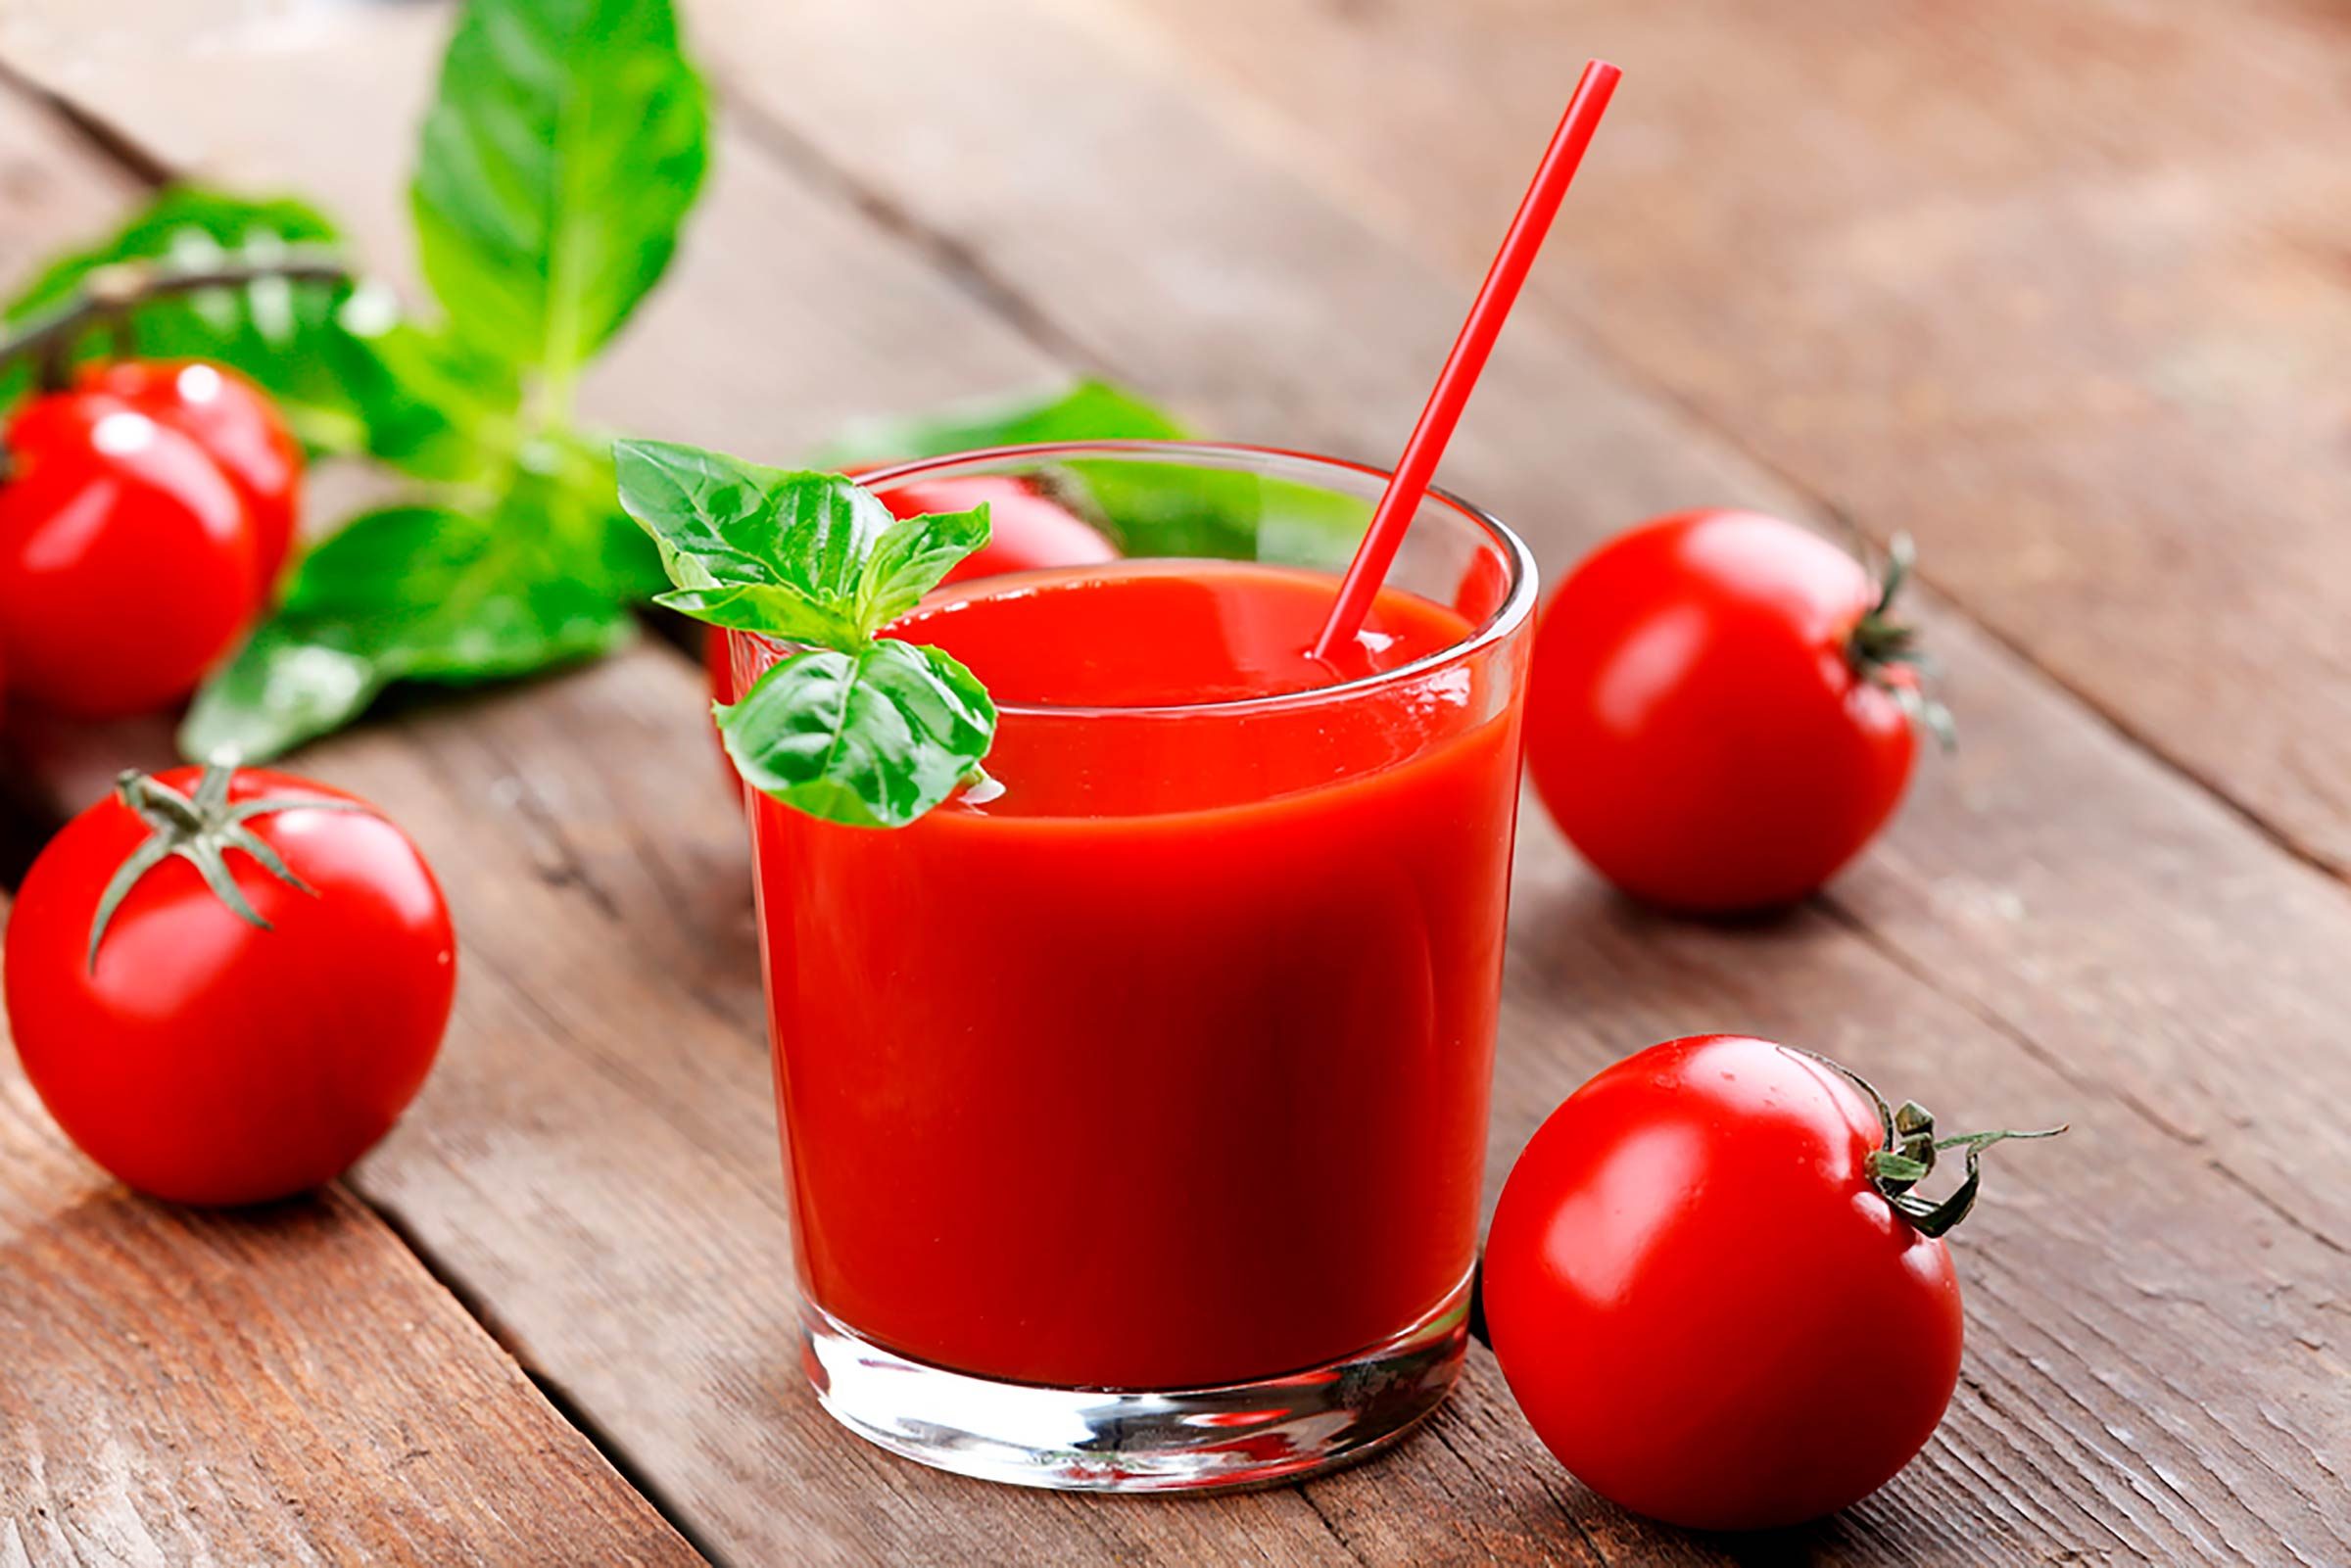 كيف يمكن استخدام الطماطم لتحسين صحة البشرة